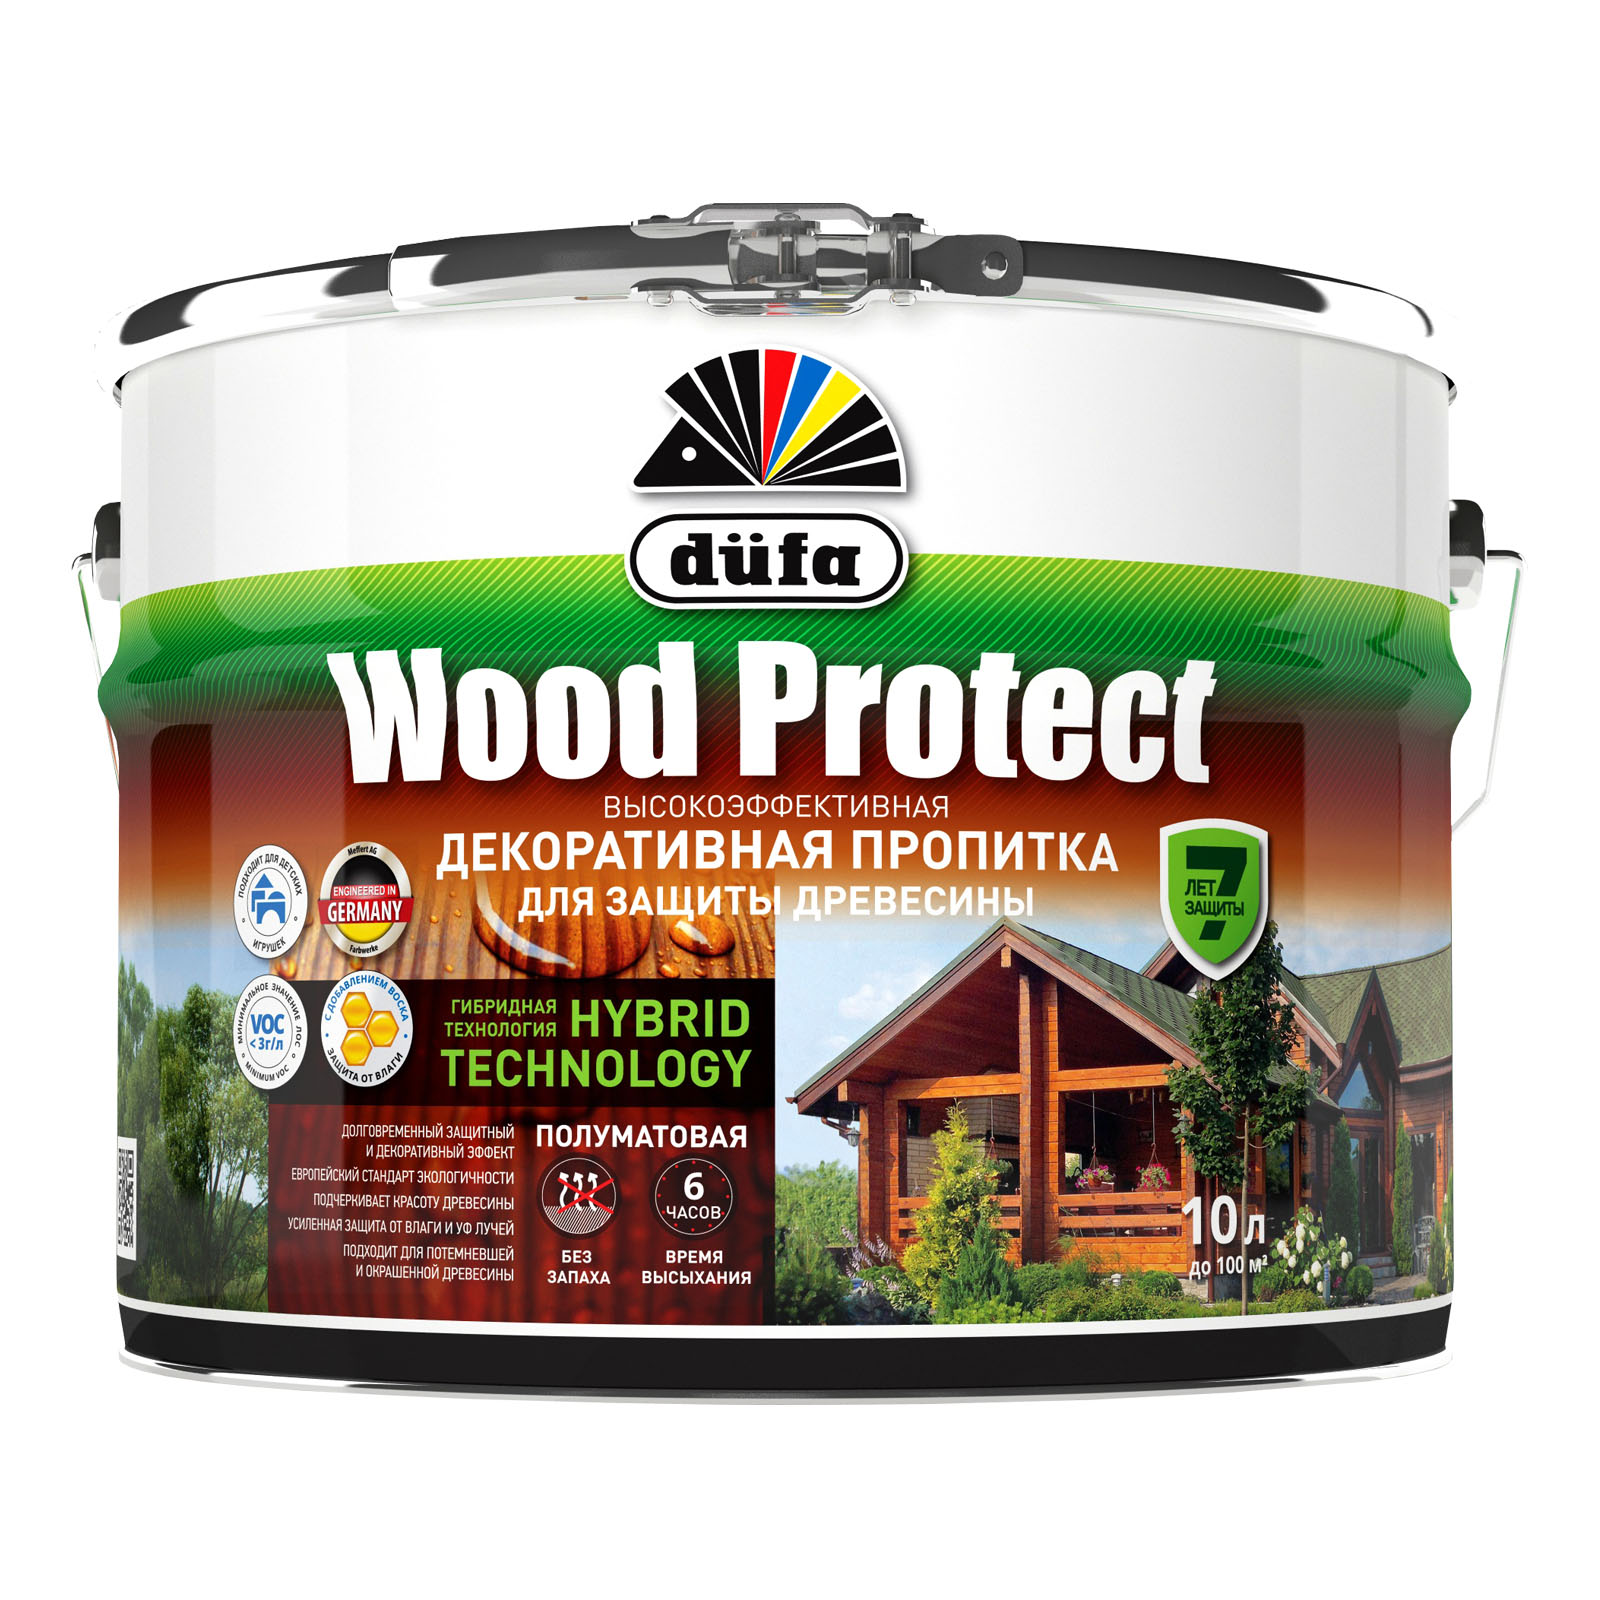 Пропитка для древесины Dufa Wood Protect бесцветная, 10 л